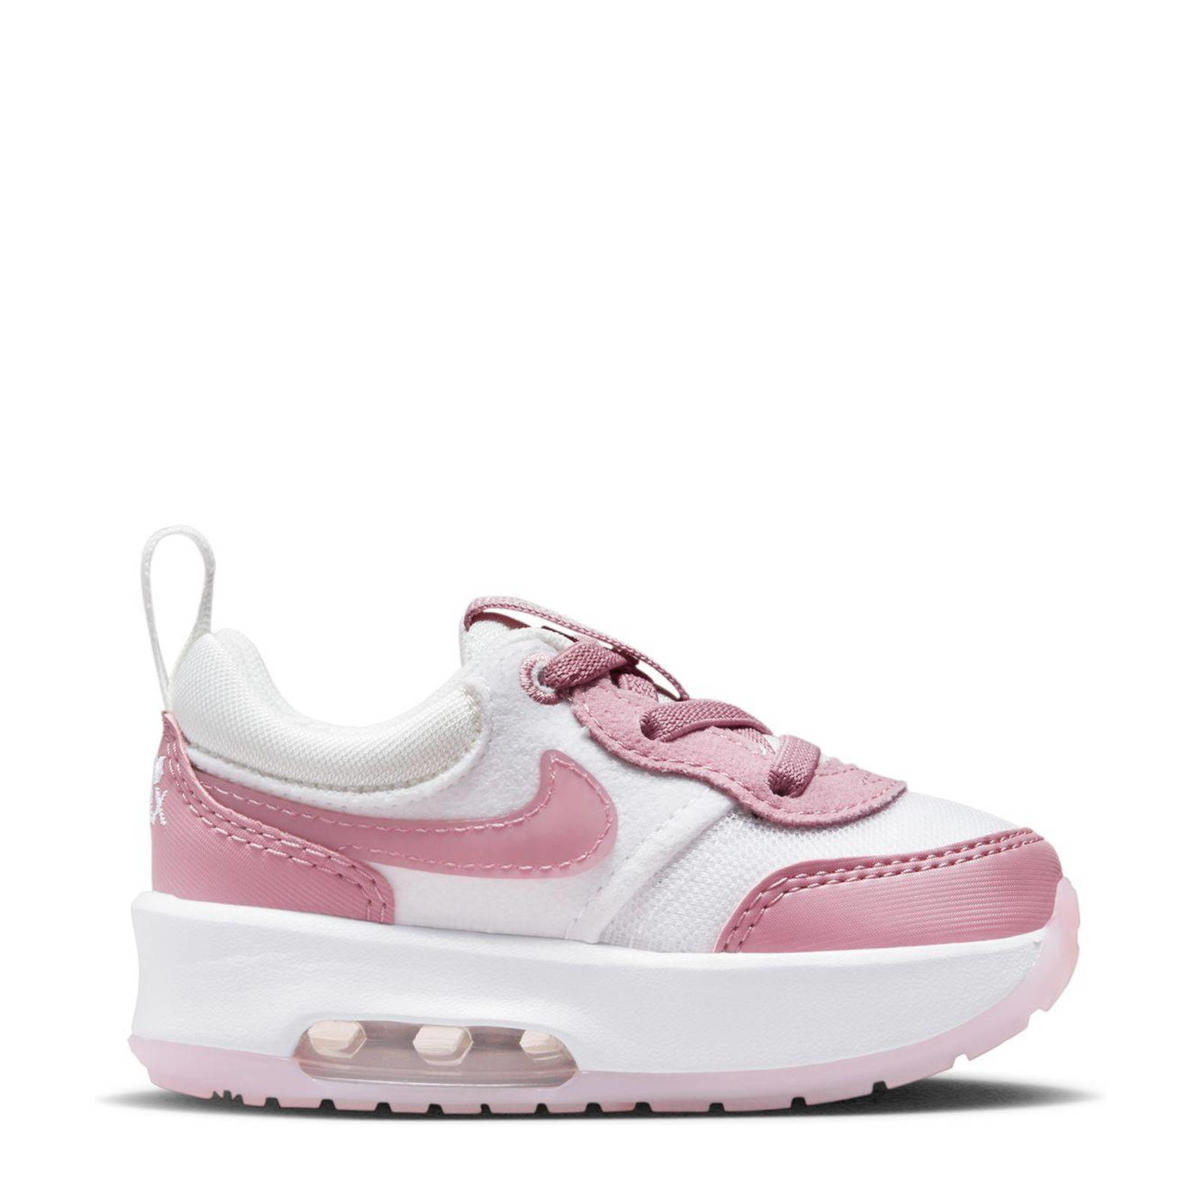 Air Max Motif sneakers wit/roze wehkamp